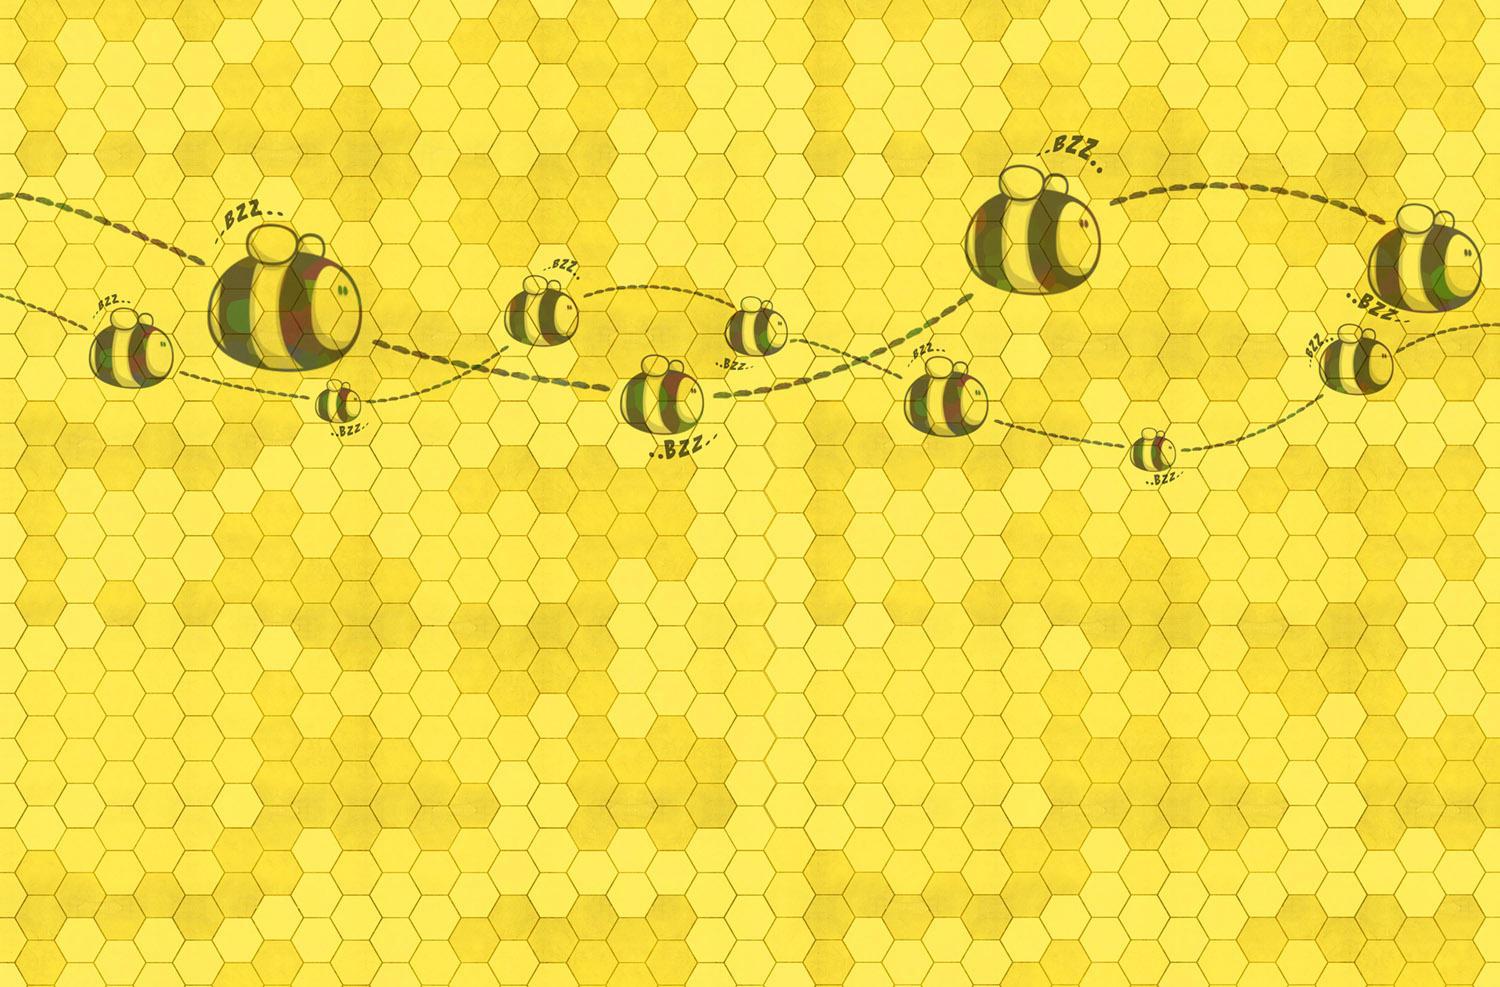 Aesthetic Honey Wallpaper